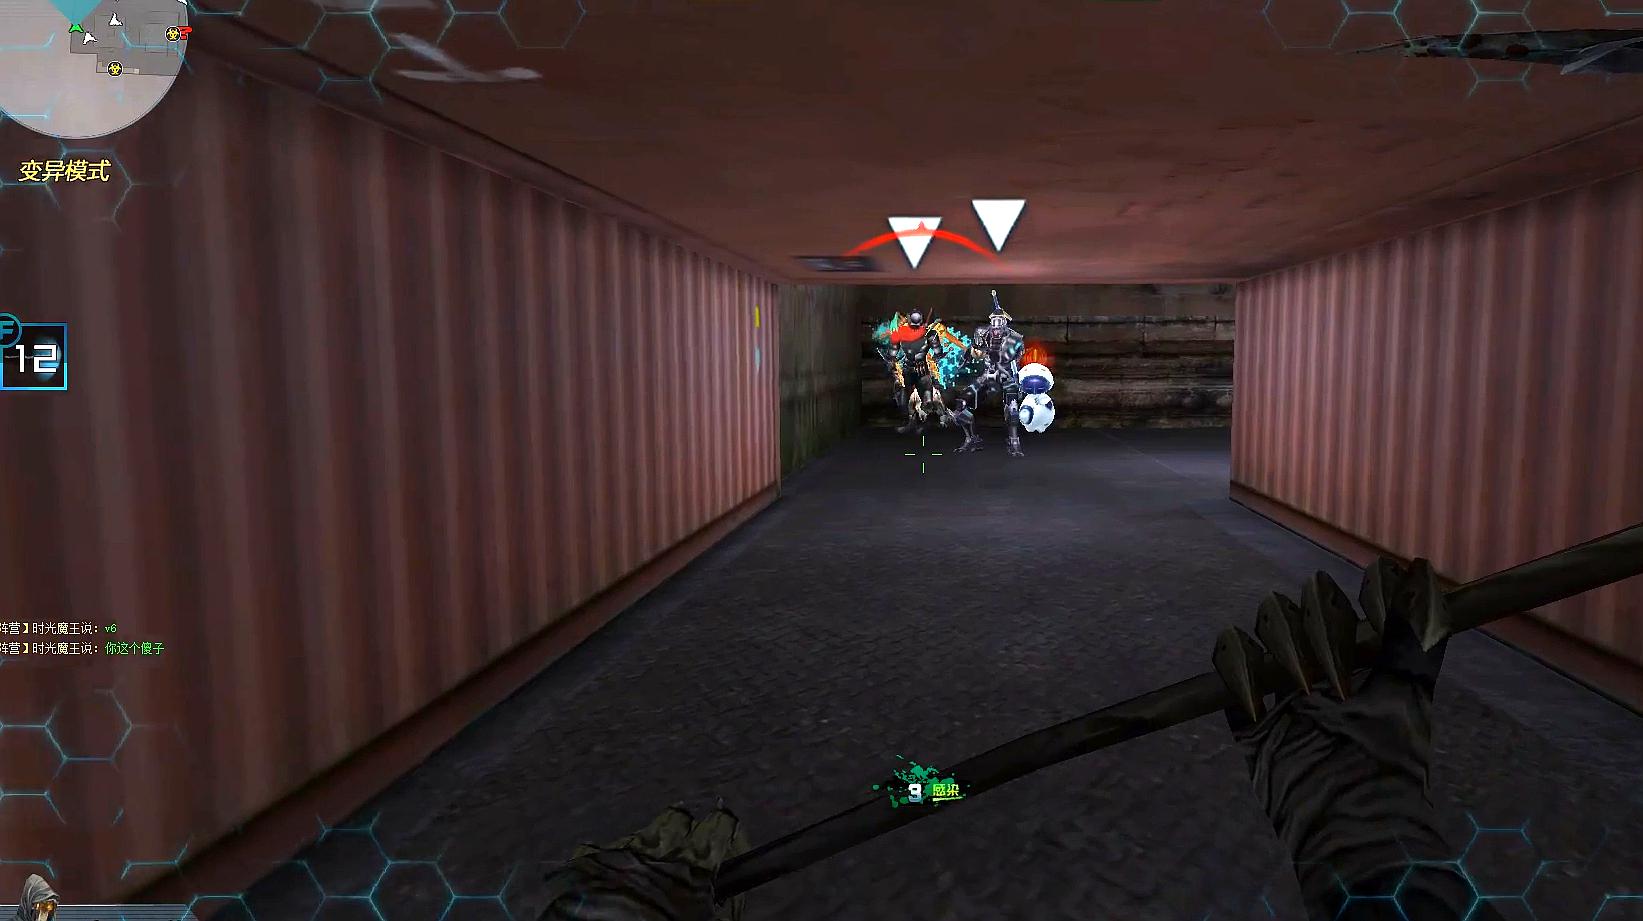 皮皮然游戏解说:射击类游戏《生死狙击》之生化模式的视频集合